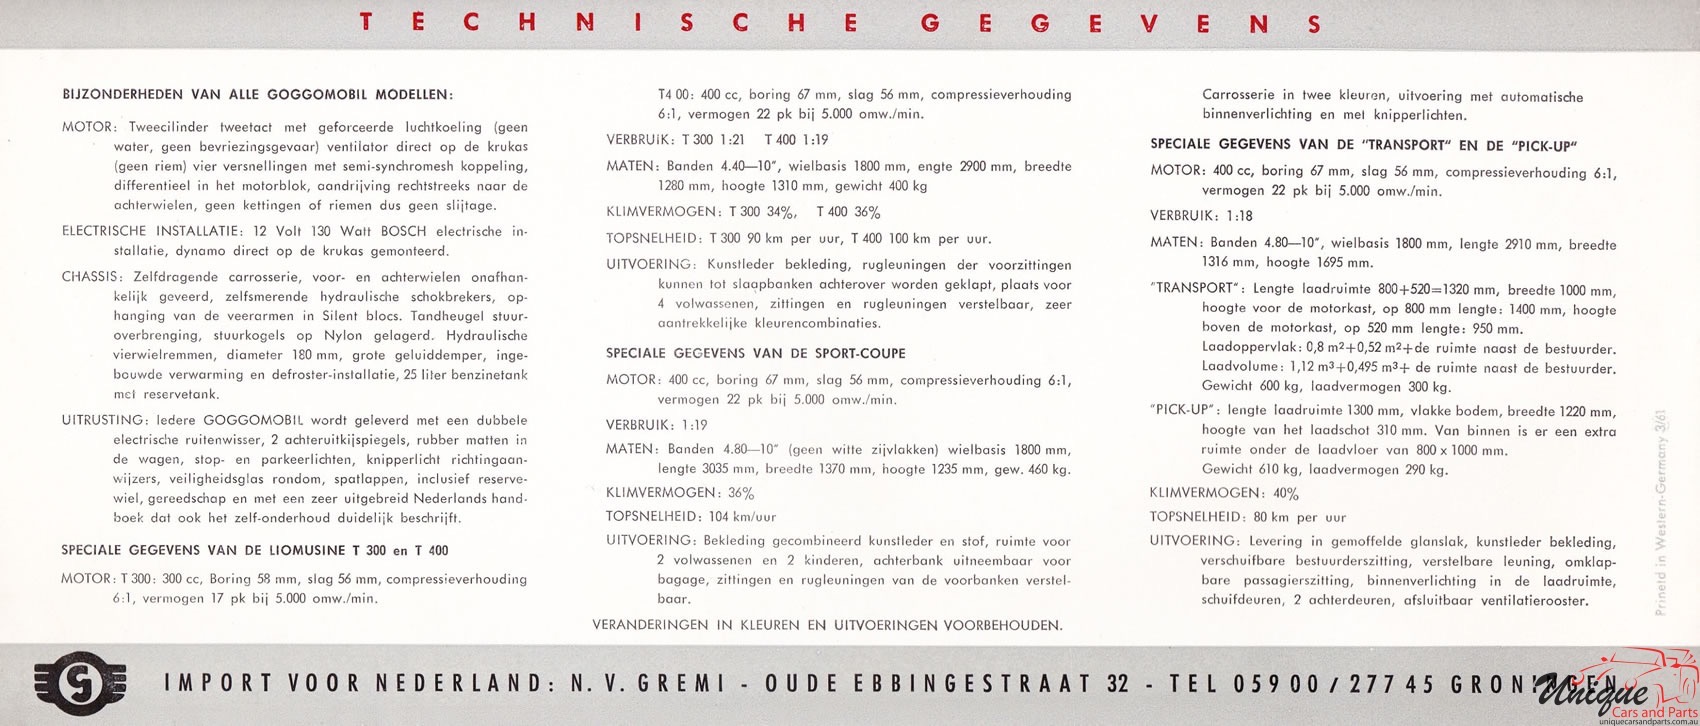 1961 Glas Goggomobil Brochure Page 1